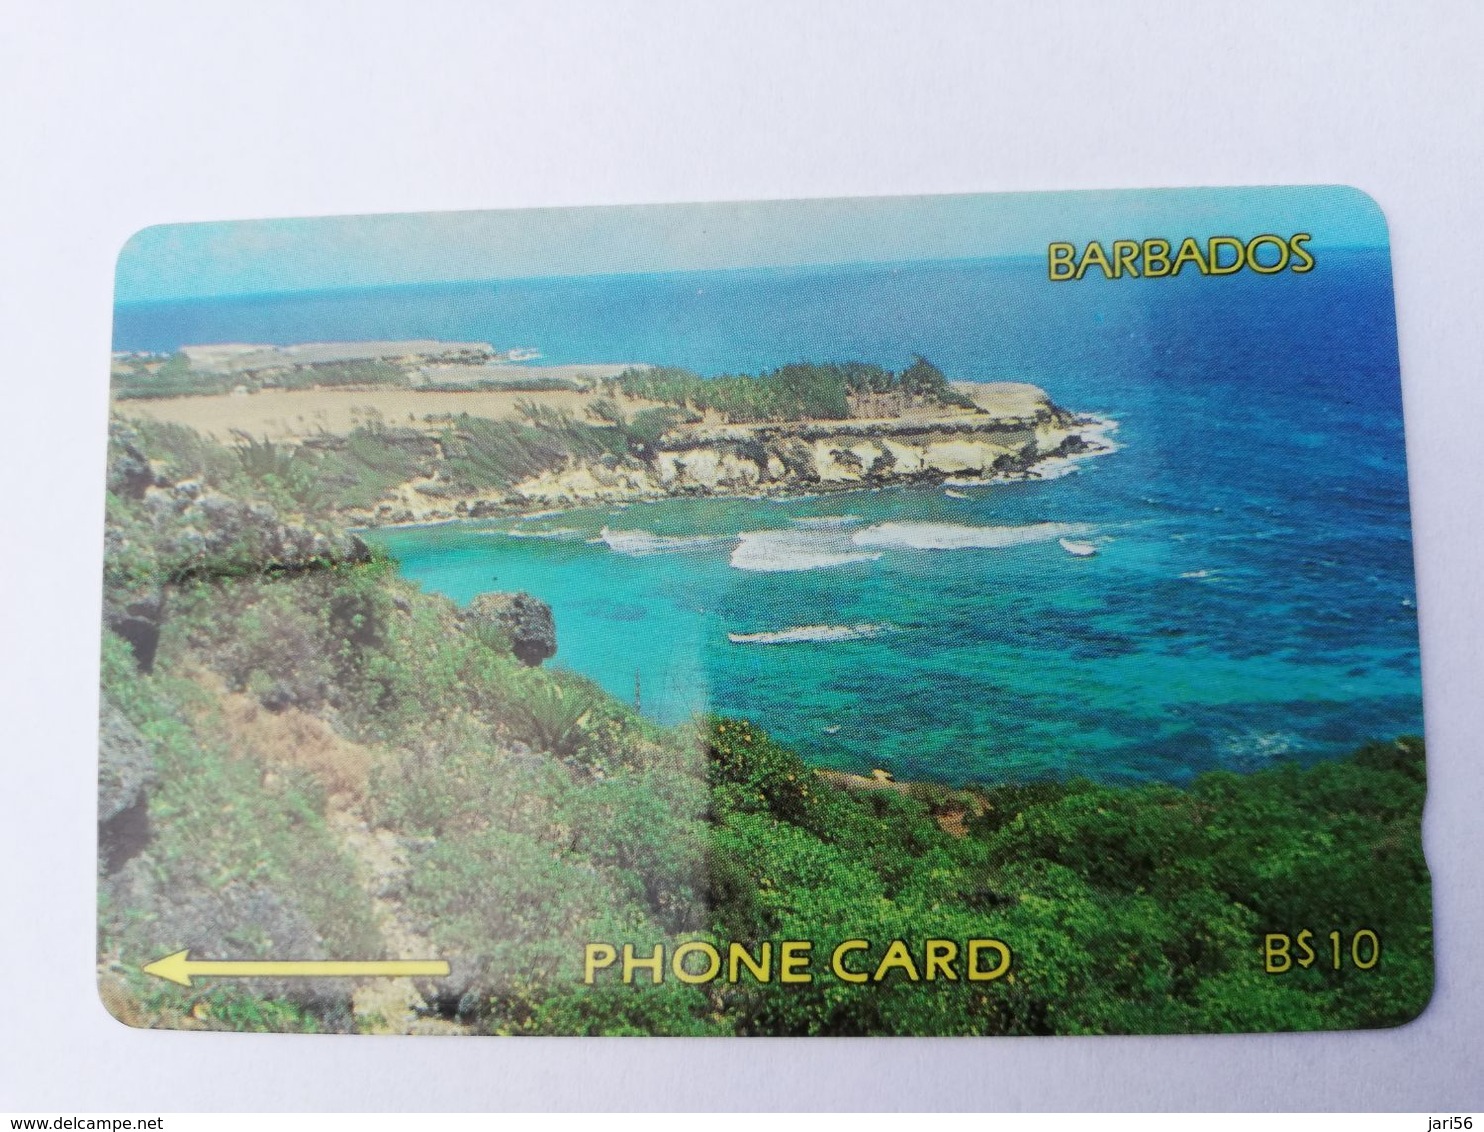 BARBADOS   $10-  Gpt Magnetic     BAR-9A  9CBDA     COASTLINE NO LOGO         Very Fine Used  Card  ** 2875** - Barbados